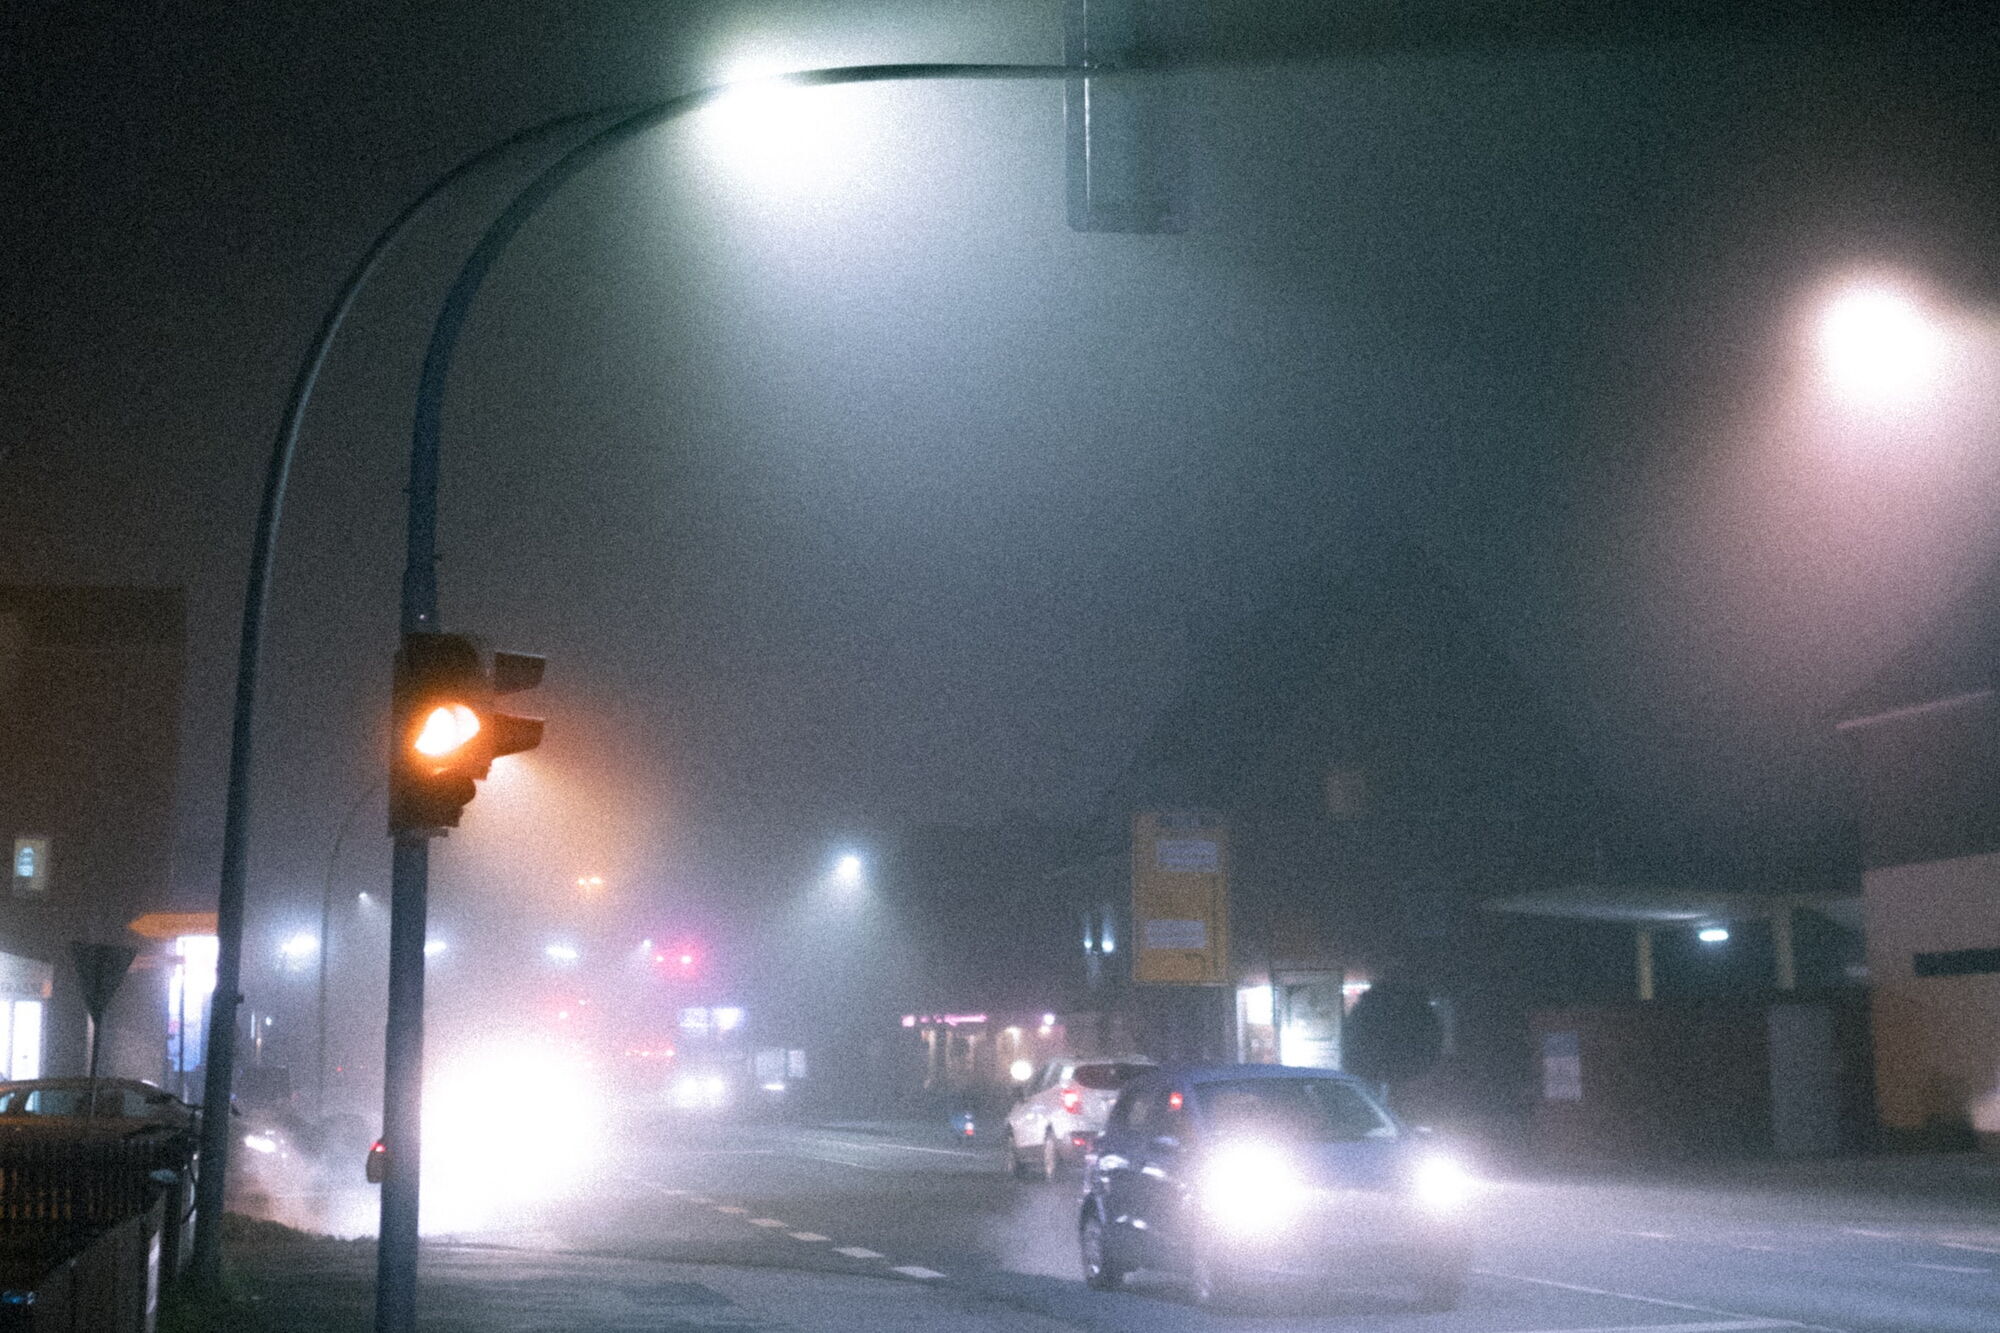 Попав в зону тумана важно незамедлительно снизить скорость до 30-50 км/ч, а в случае очень плохой видимости – до 25 км/ч